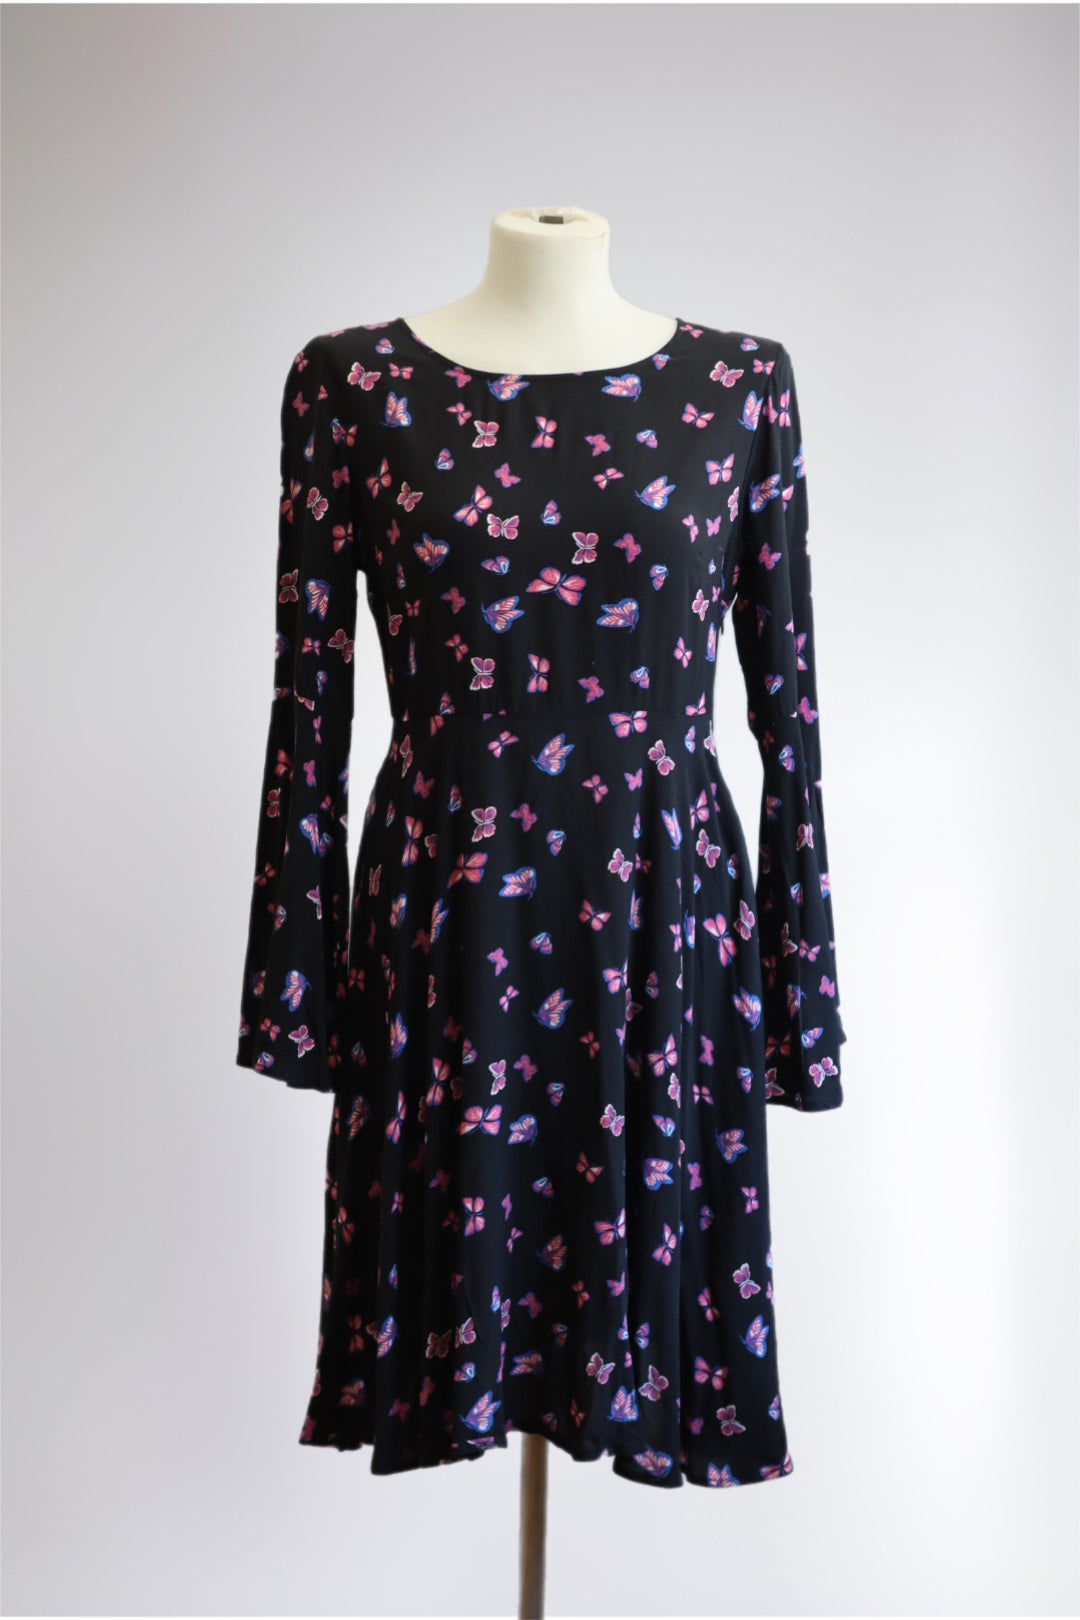 Kjole svart, med rosa mønster - brukt